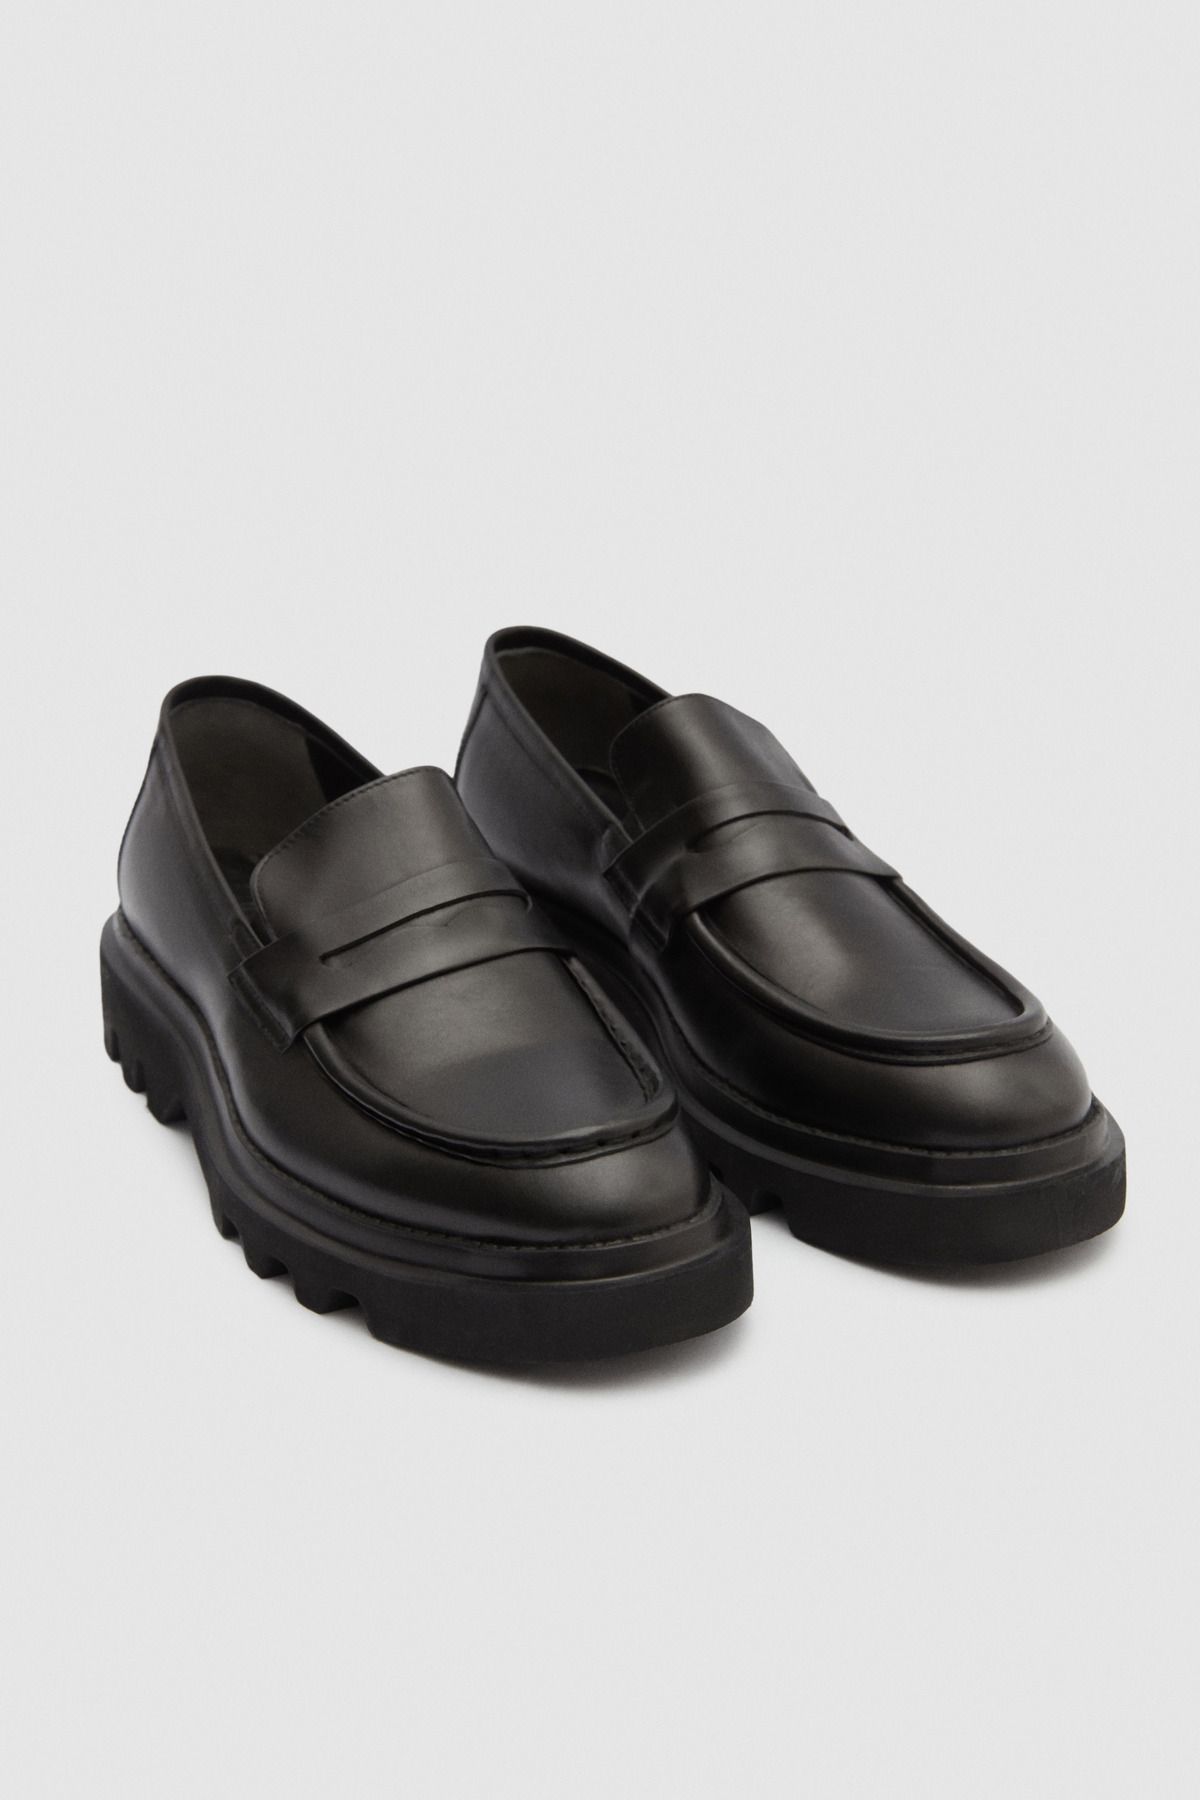 D'S Damat Siyah Bant Detaylı Deri Loafer Ayakkabı